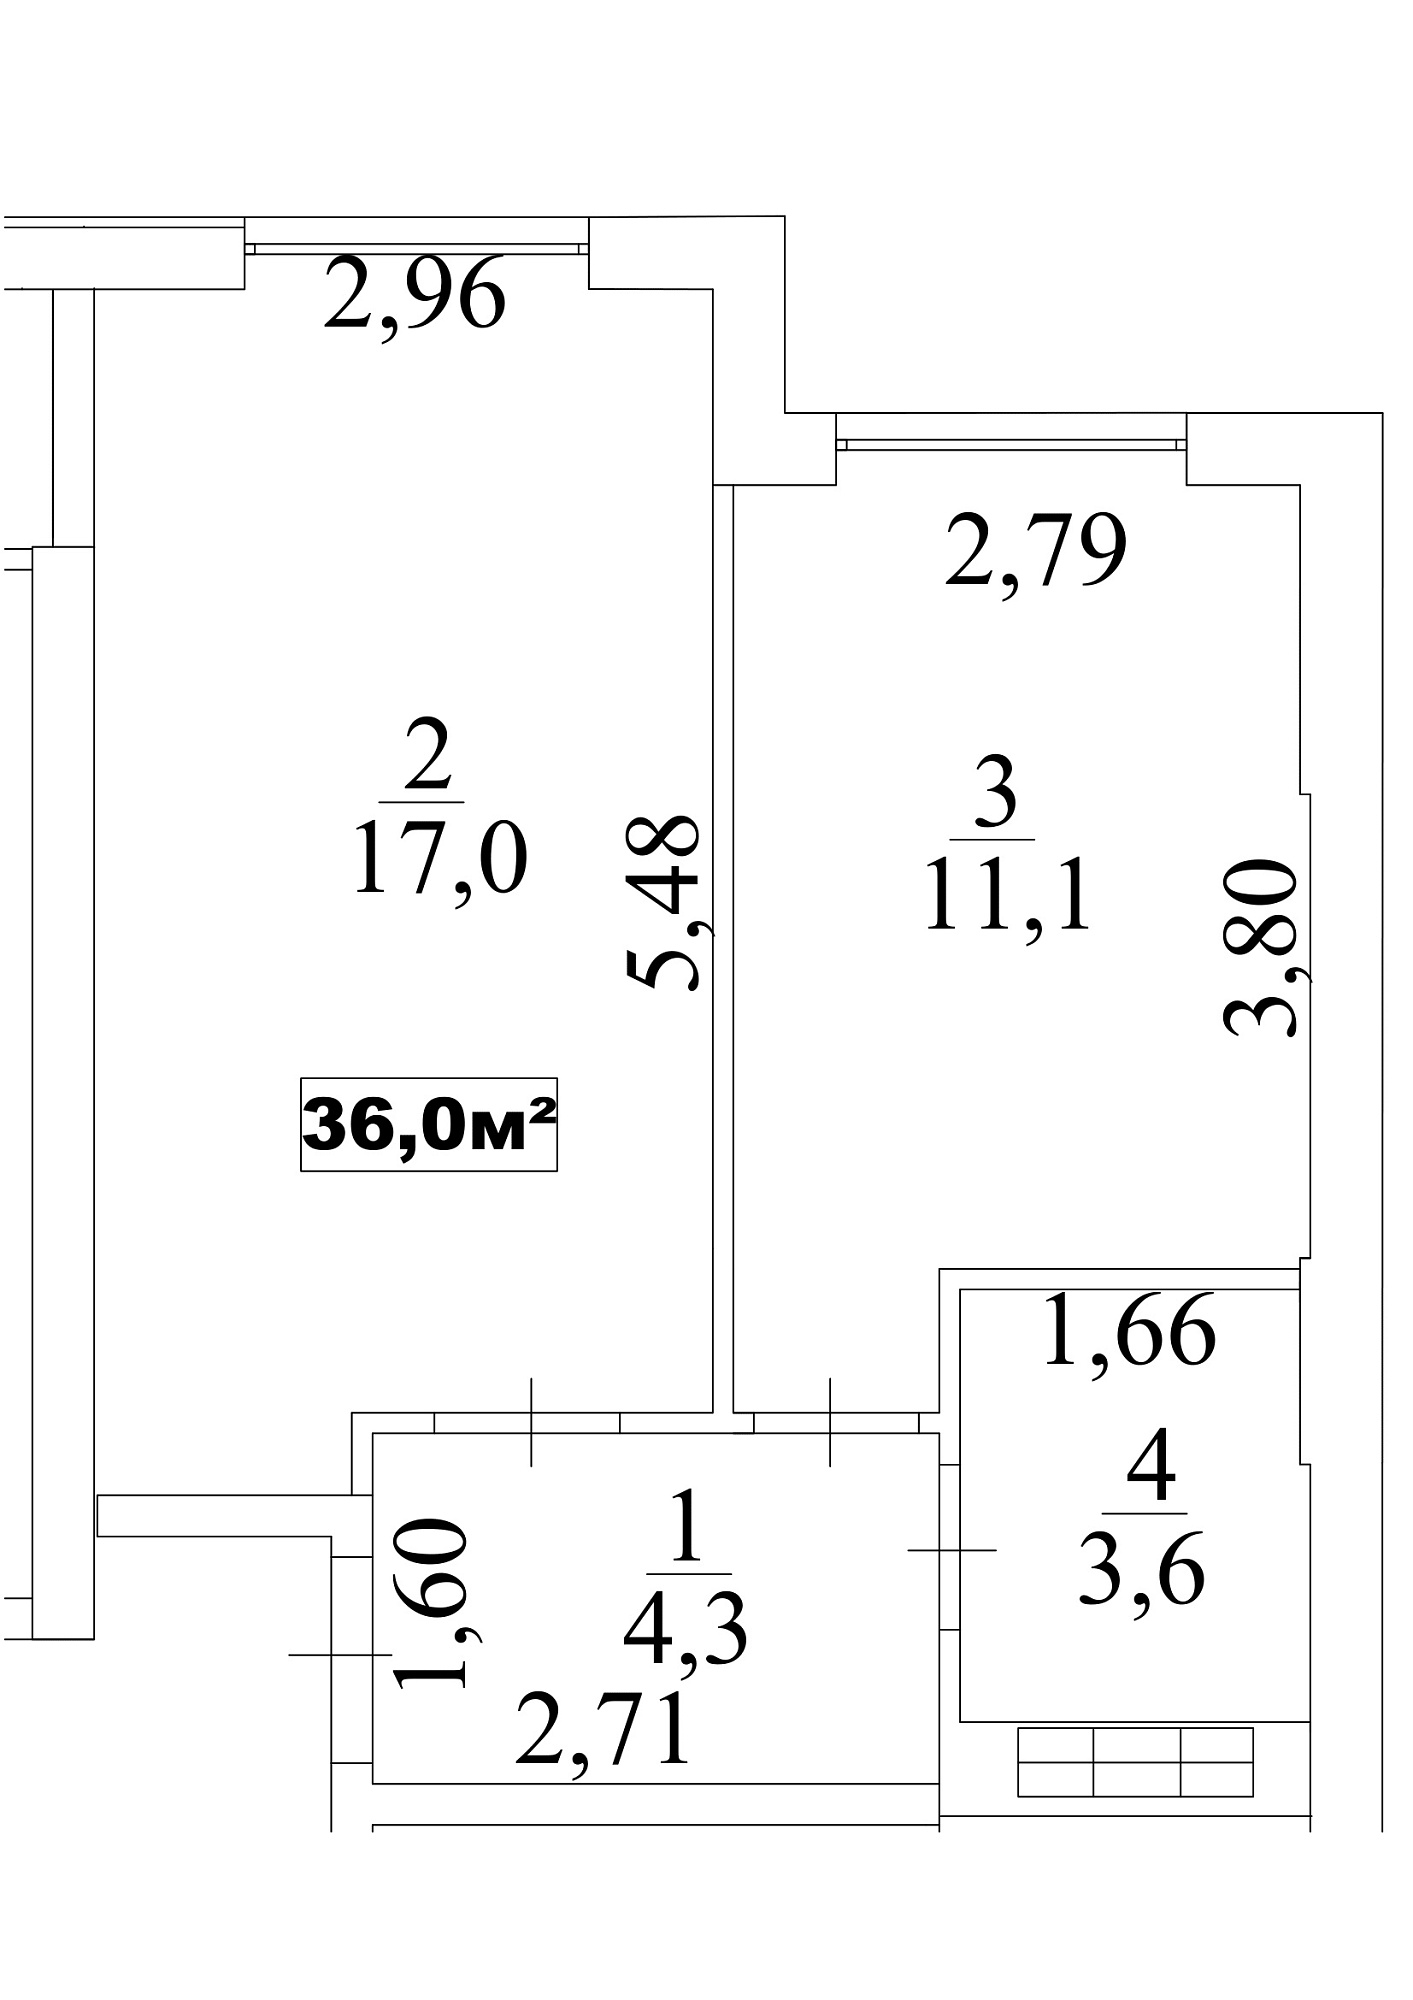 Планування 1-к квартира площею 36м2, AB-10-08/0070б.